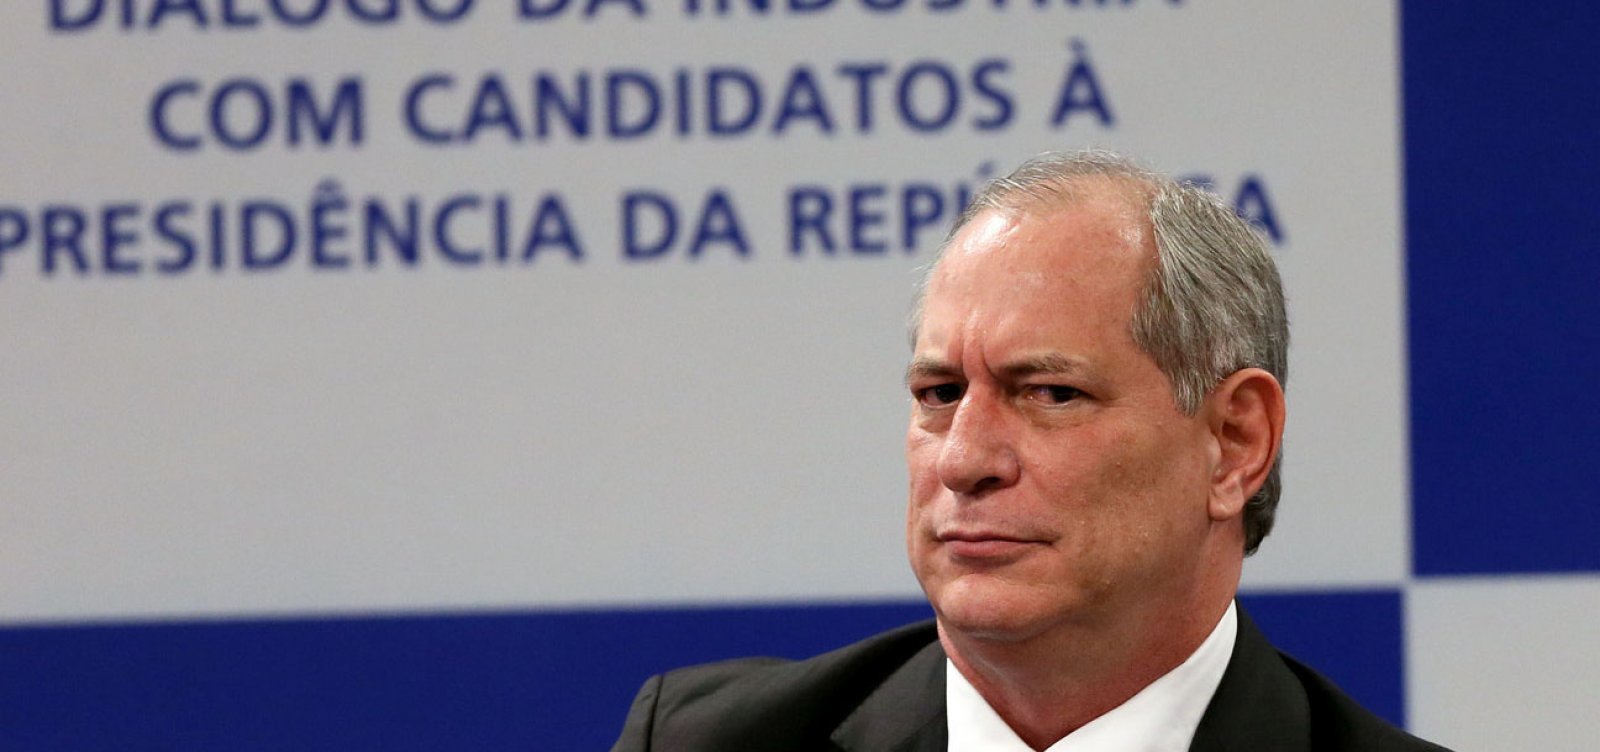 Impasse em aliança com Bolsonaro leva PR a avaliar acordo com Ciro